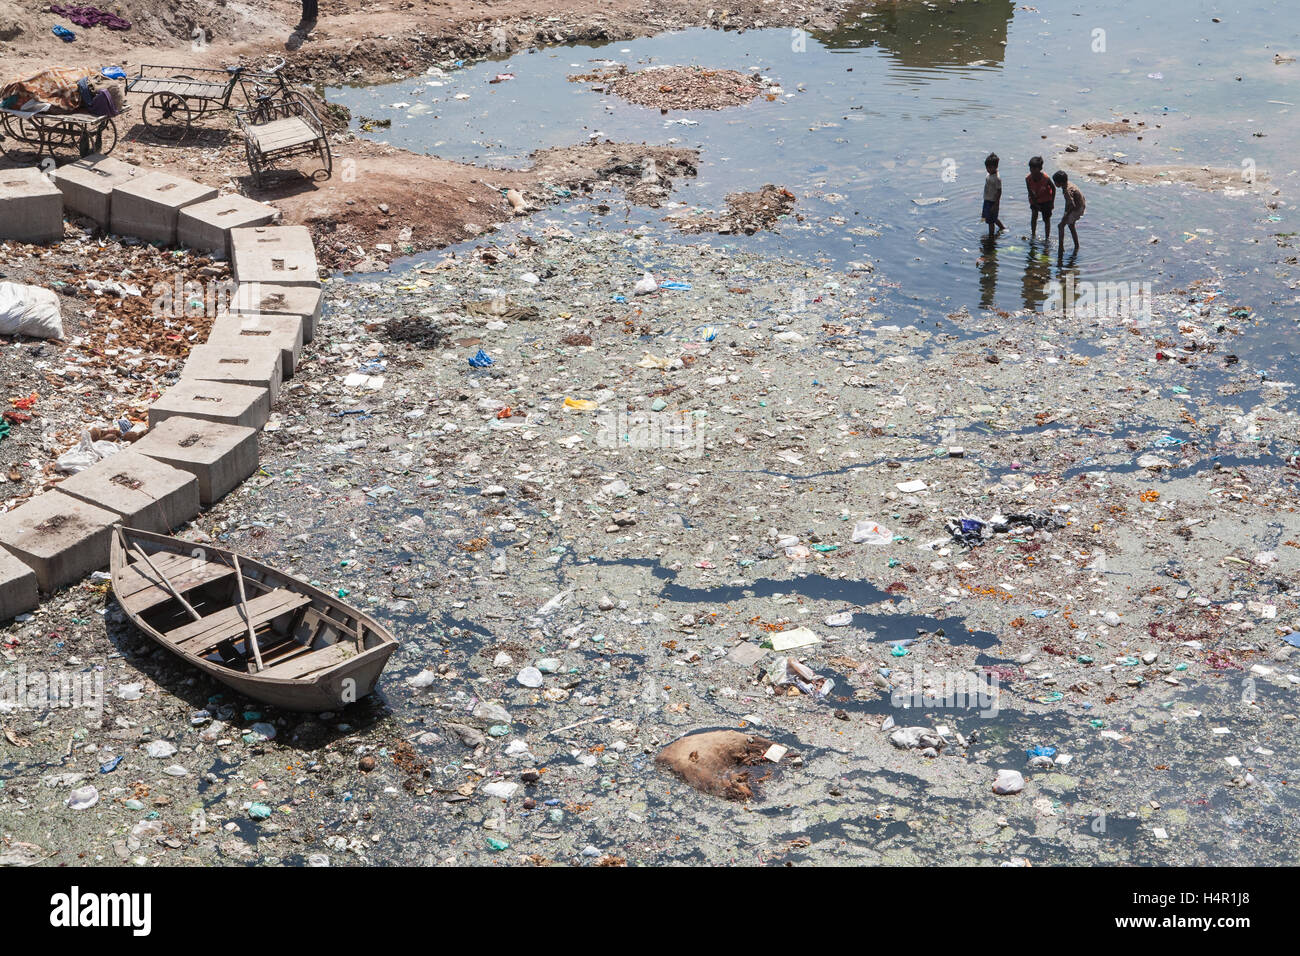 Kinder spielen in dreckigen und verschmutzten Fluss Sabarmati in das Zentrum von Ahmedabad, Gujarat Zustand, Indien, Asien. Stockfoto